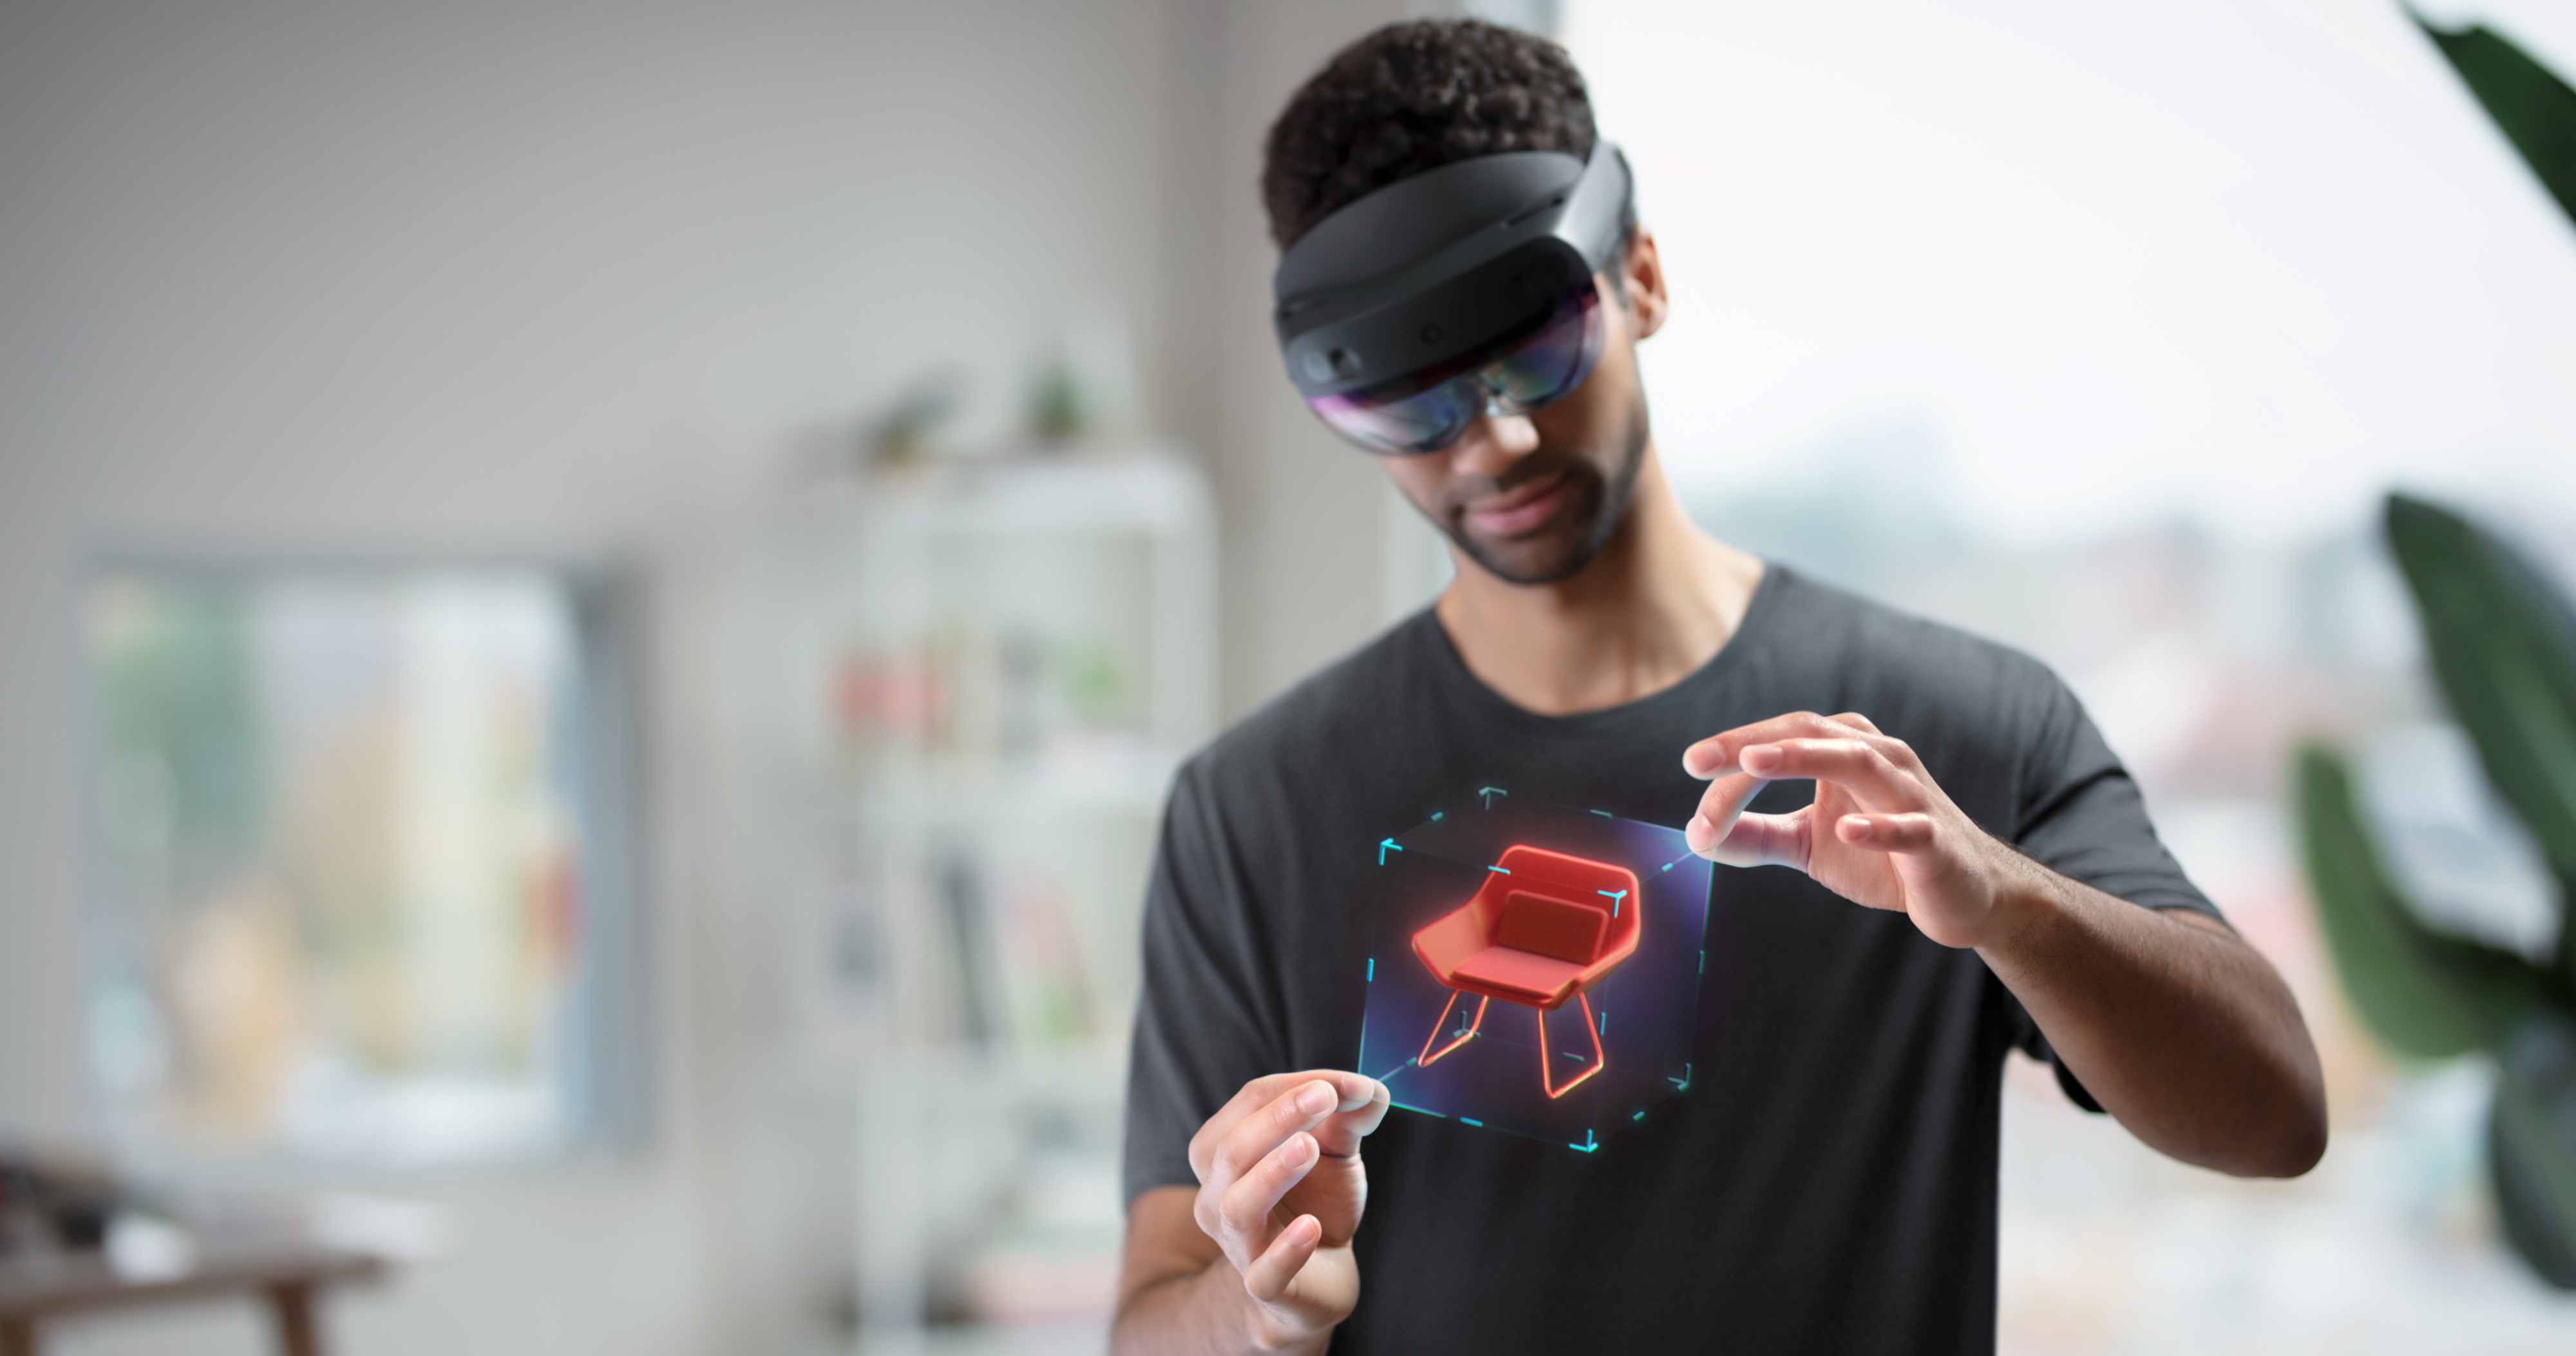 HoloLens를 착용하고 손 움직임으로 홀로그램을 조작하는 사용자의 사진